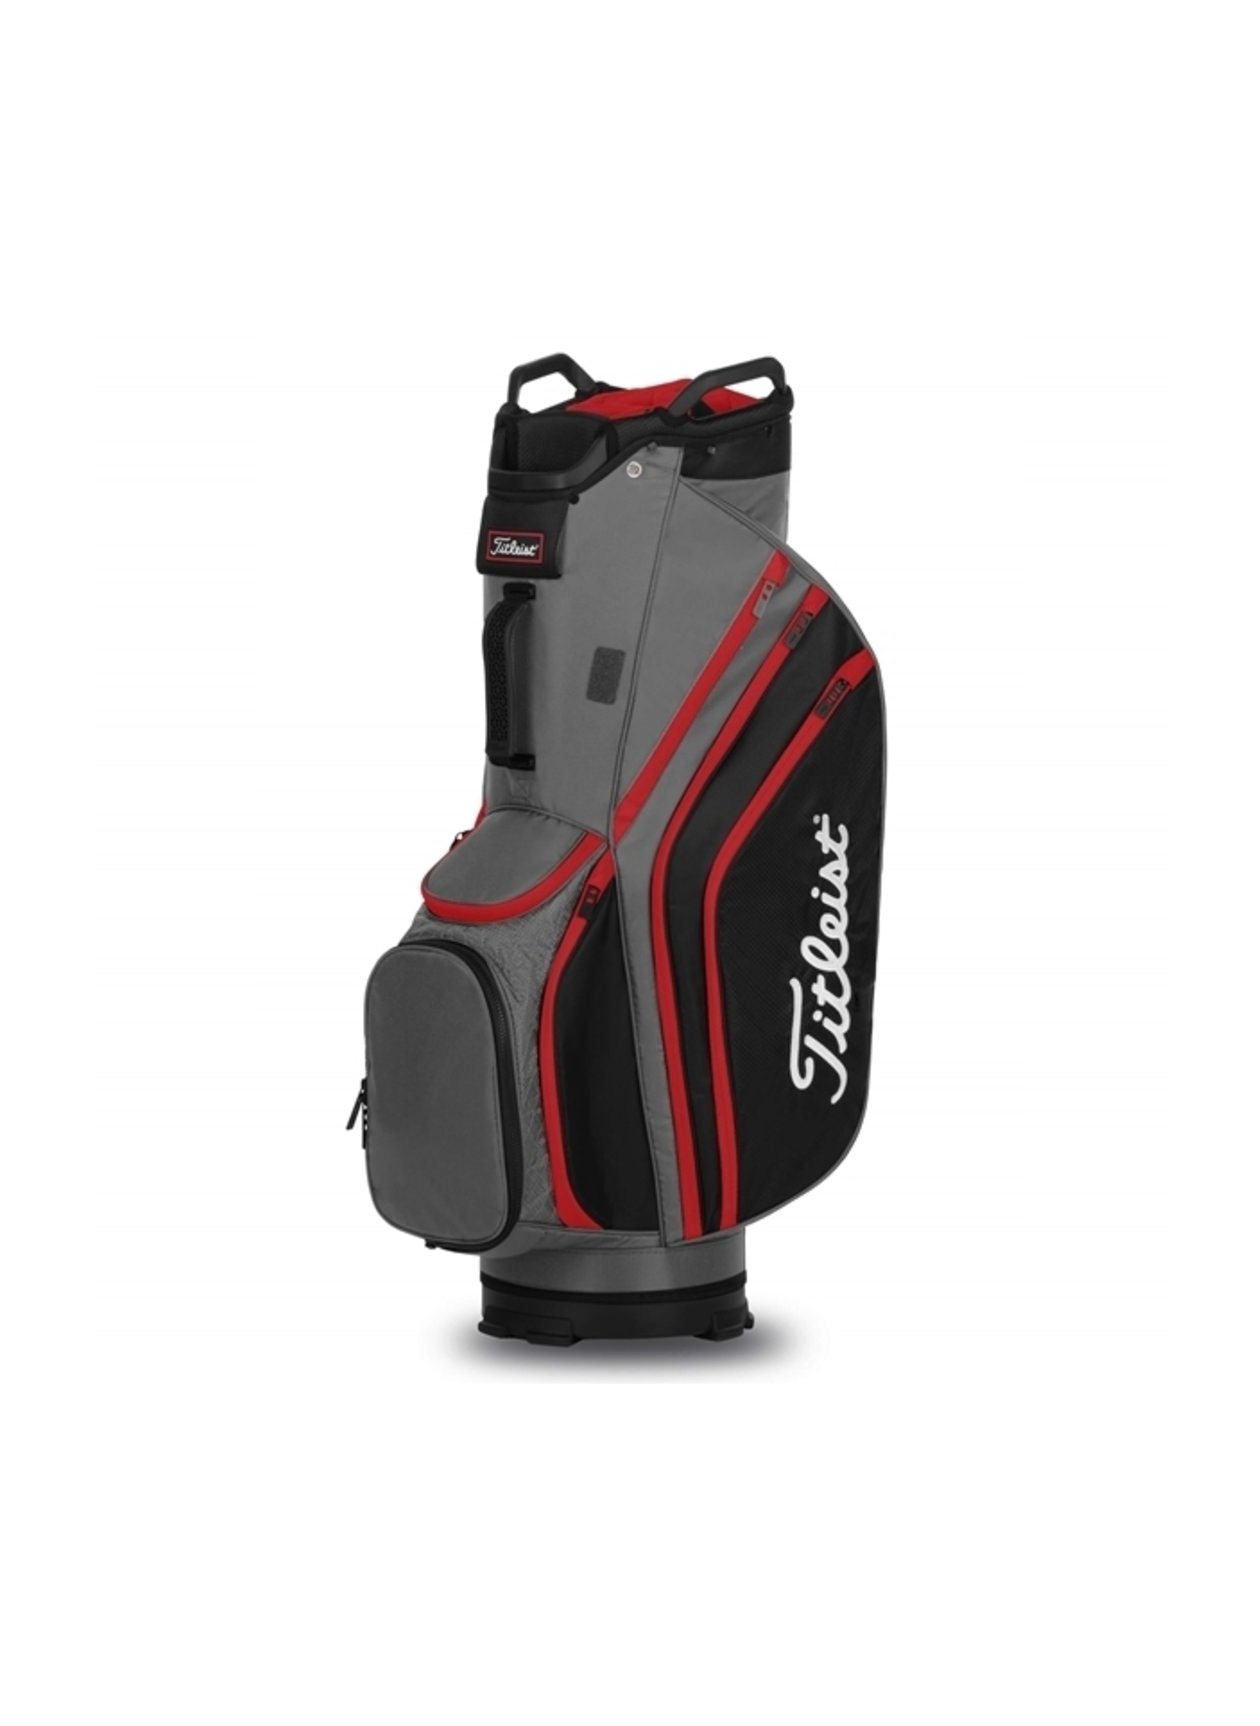 Cart 14 Bag, Lightweight Cart Golf Bag